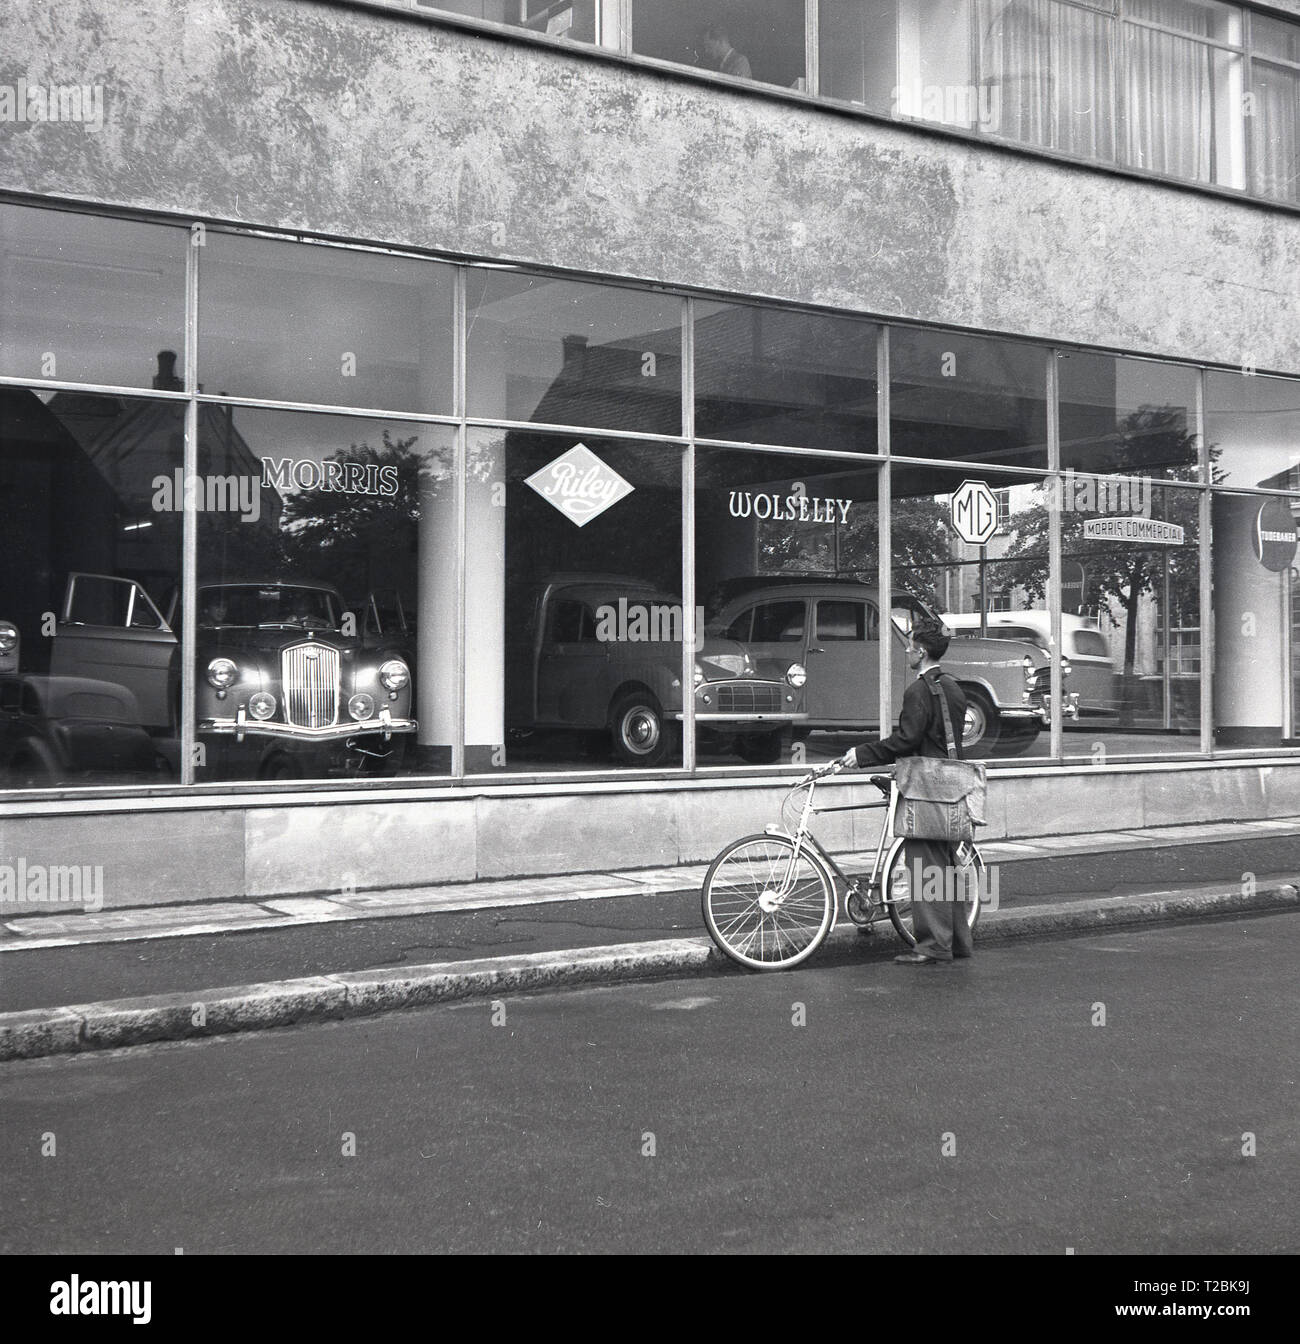 Années 1950, historiques, l'homme avec une sacoche debout près de son vélo dans une rue à l'intérieur d'une voiture à l'Austin Morris car showroom, la Norvège. Banque D'Images